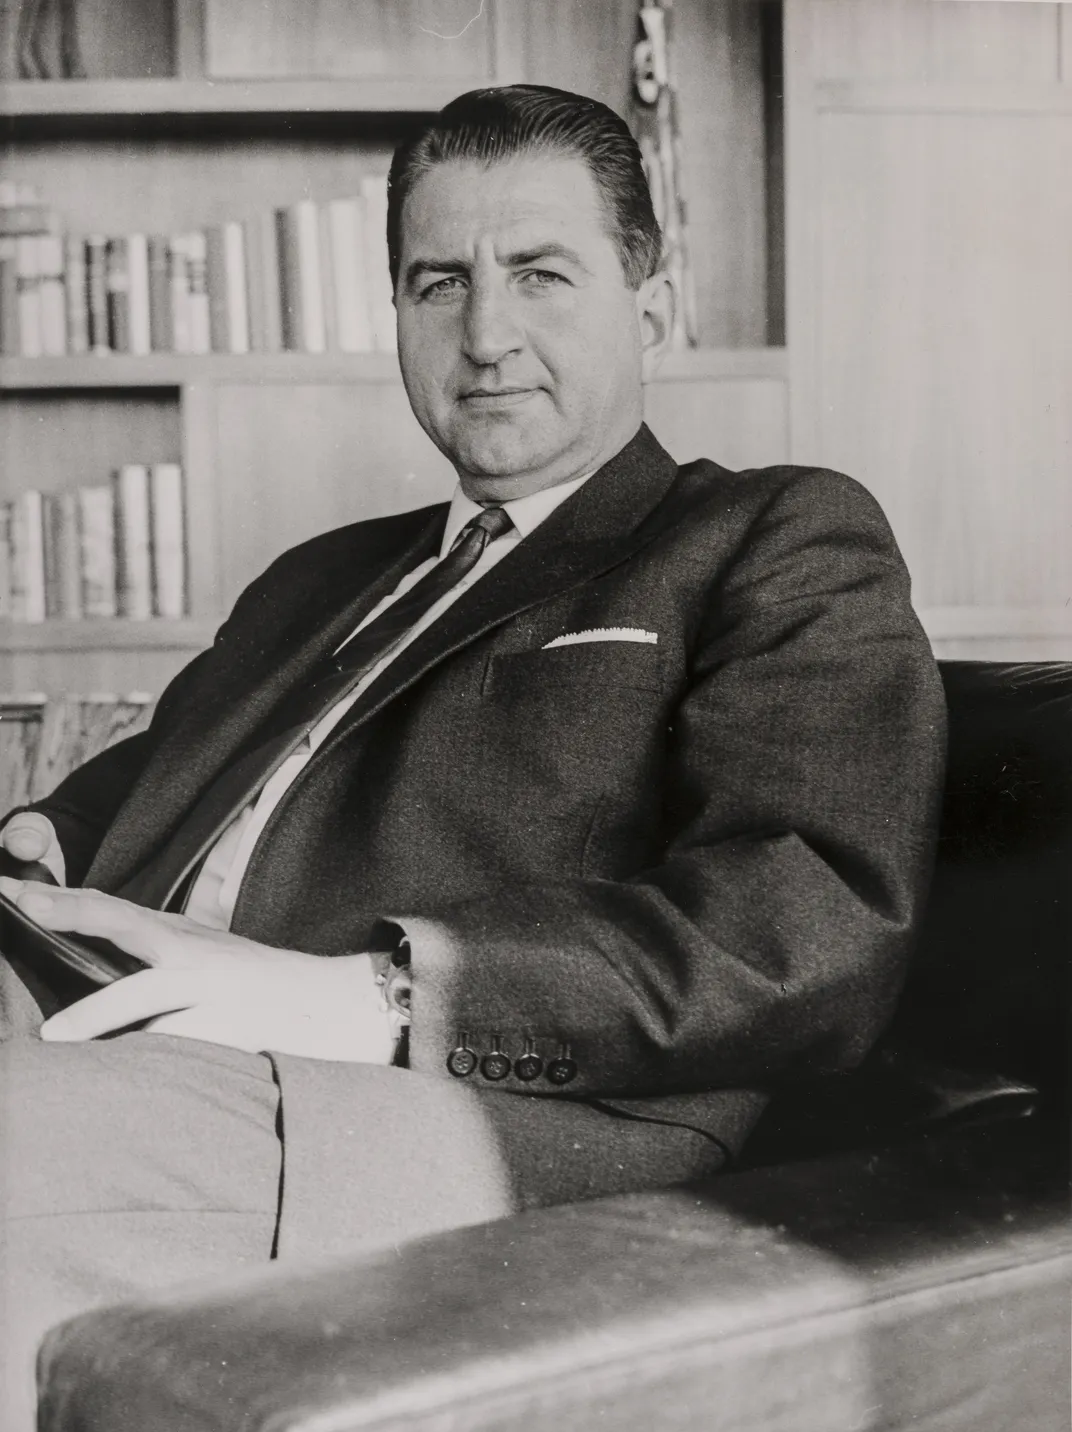 Paul Riegel in 1960